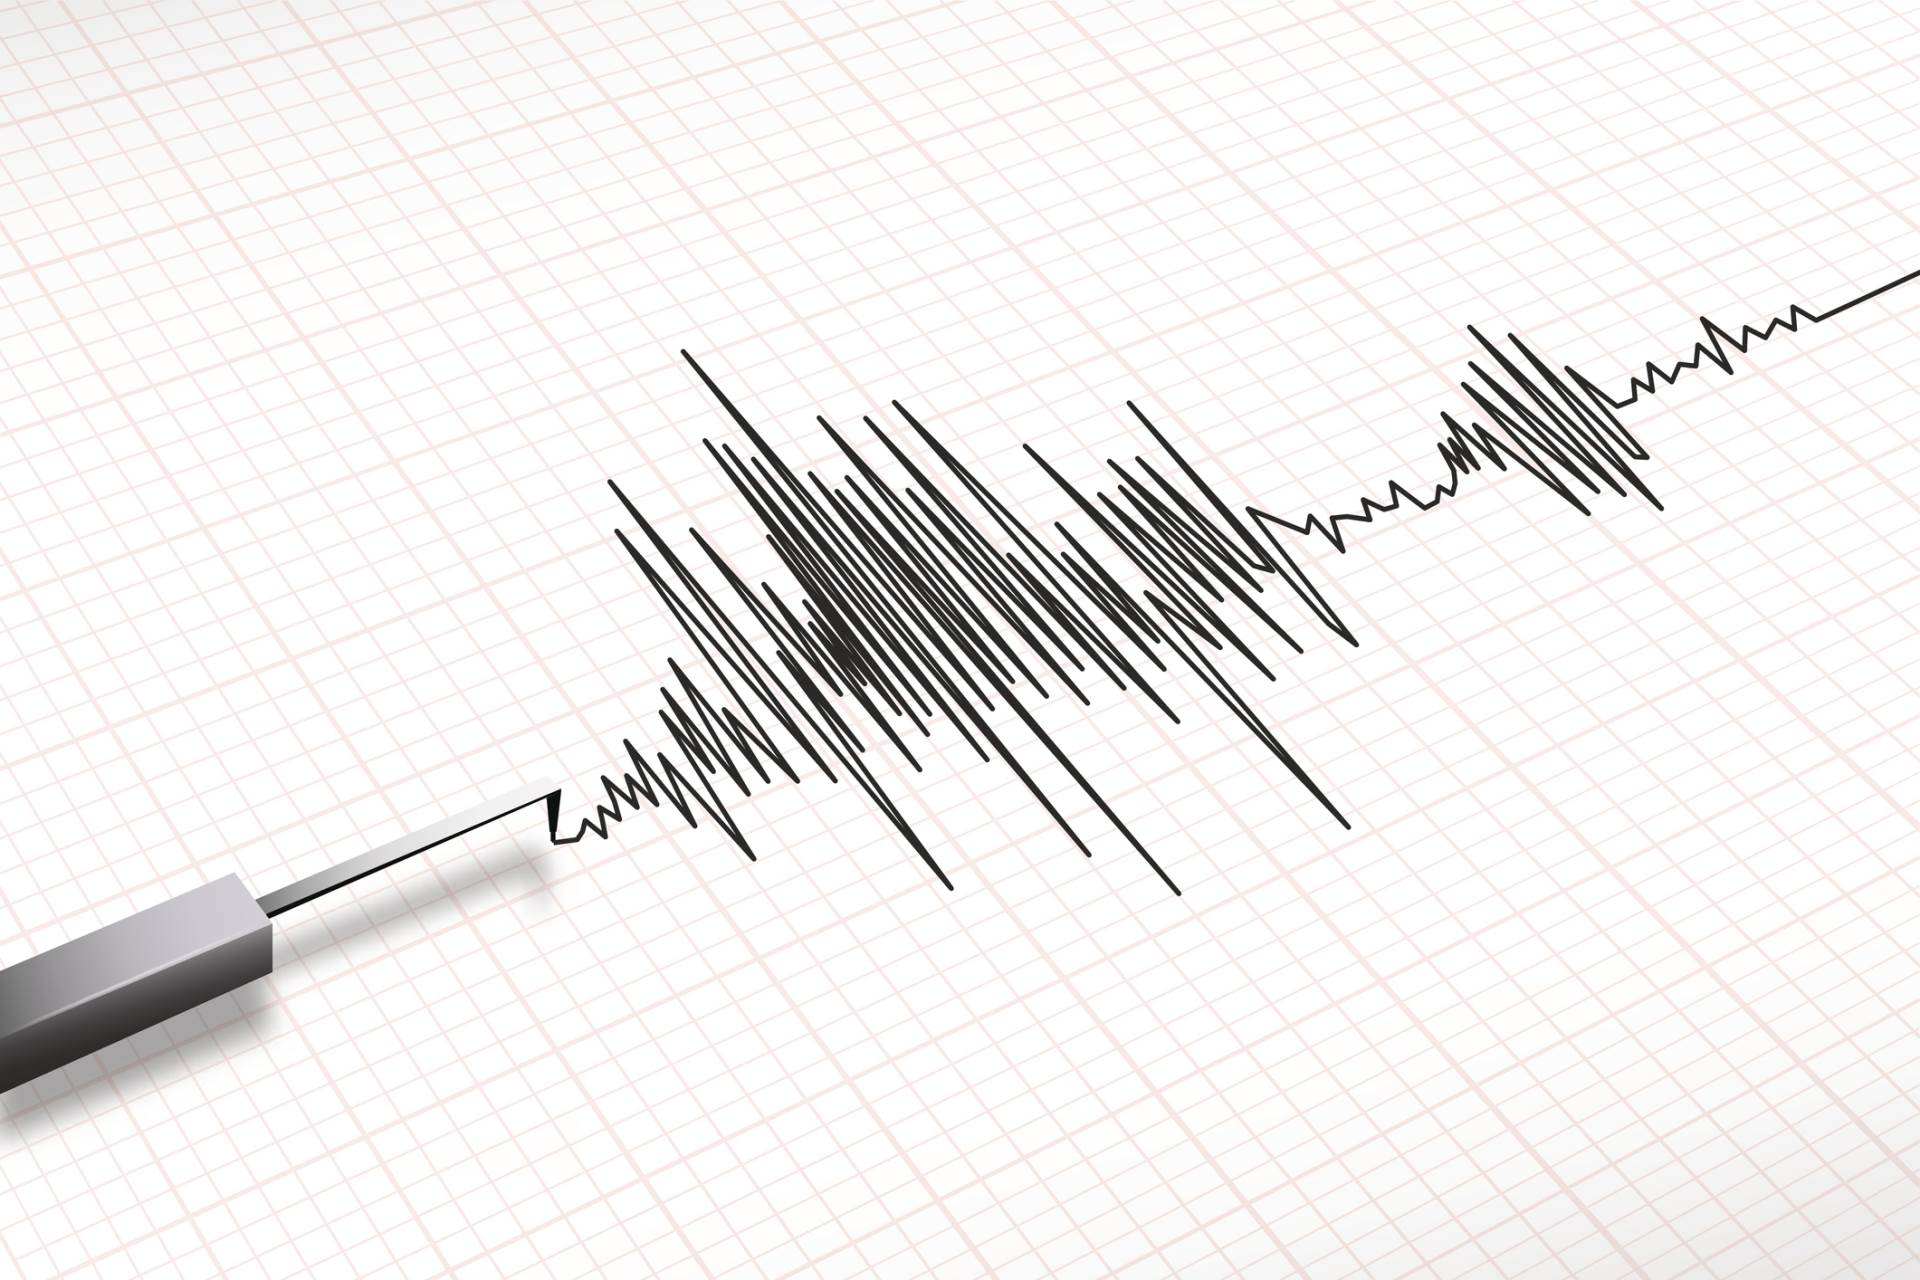  Serija potresa u Grčkoj, najjači 5.2 stepena po Rihteru 